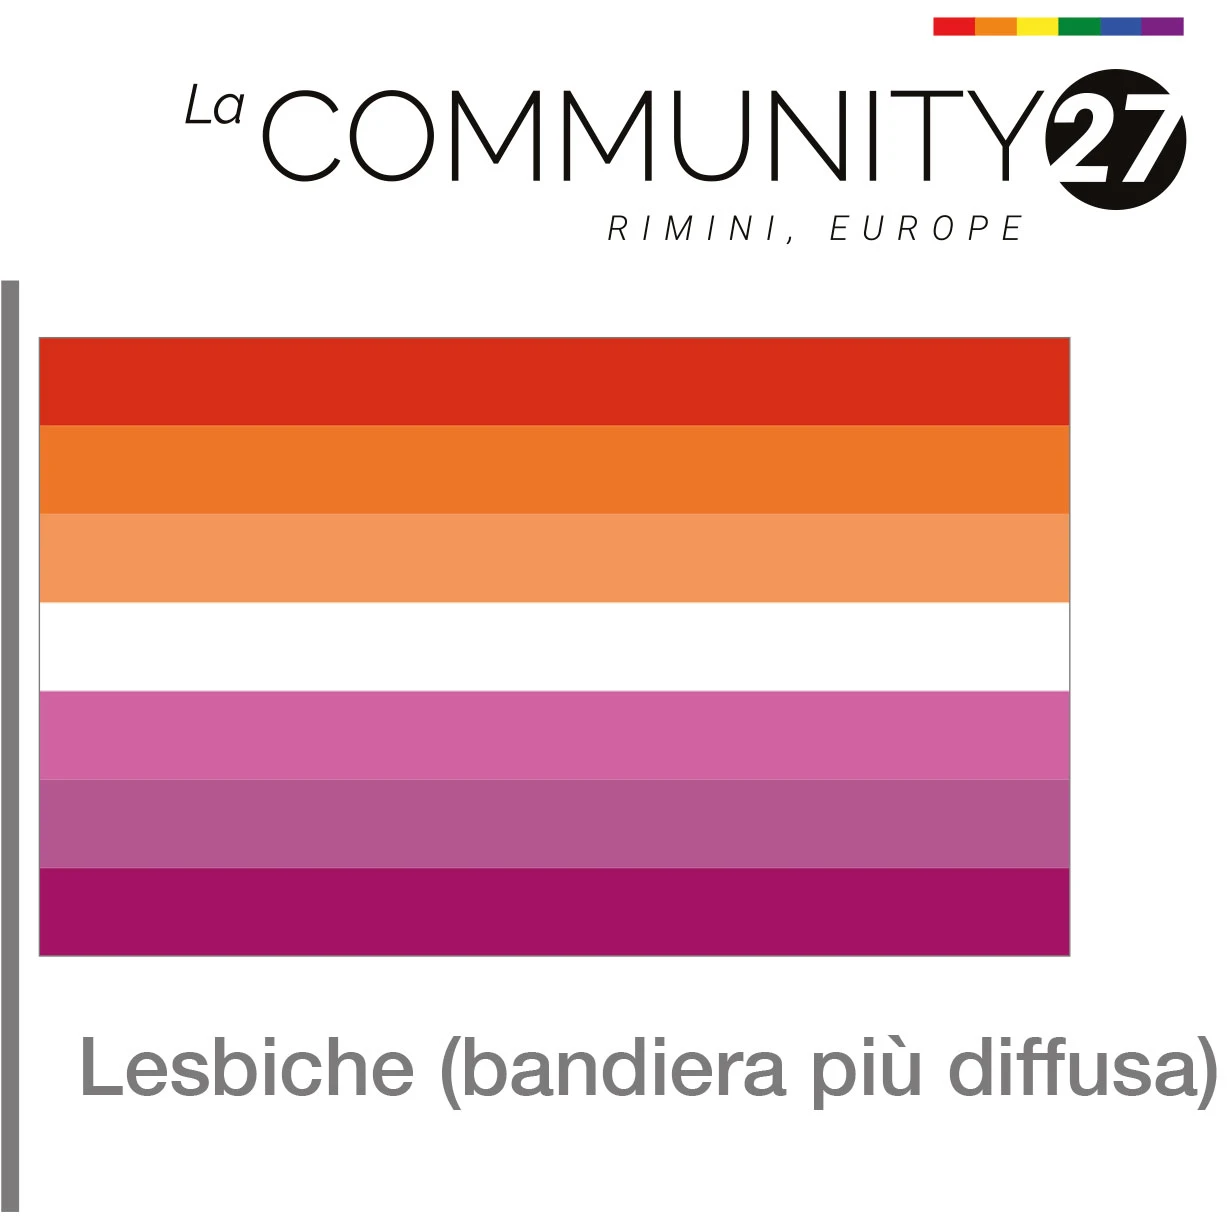 Lesbiche - bandiera LGBTQ in uso - La Communty 27